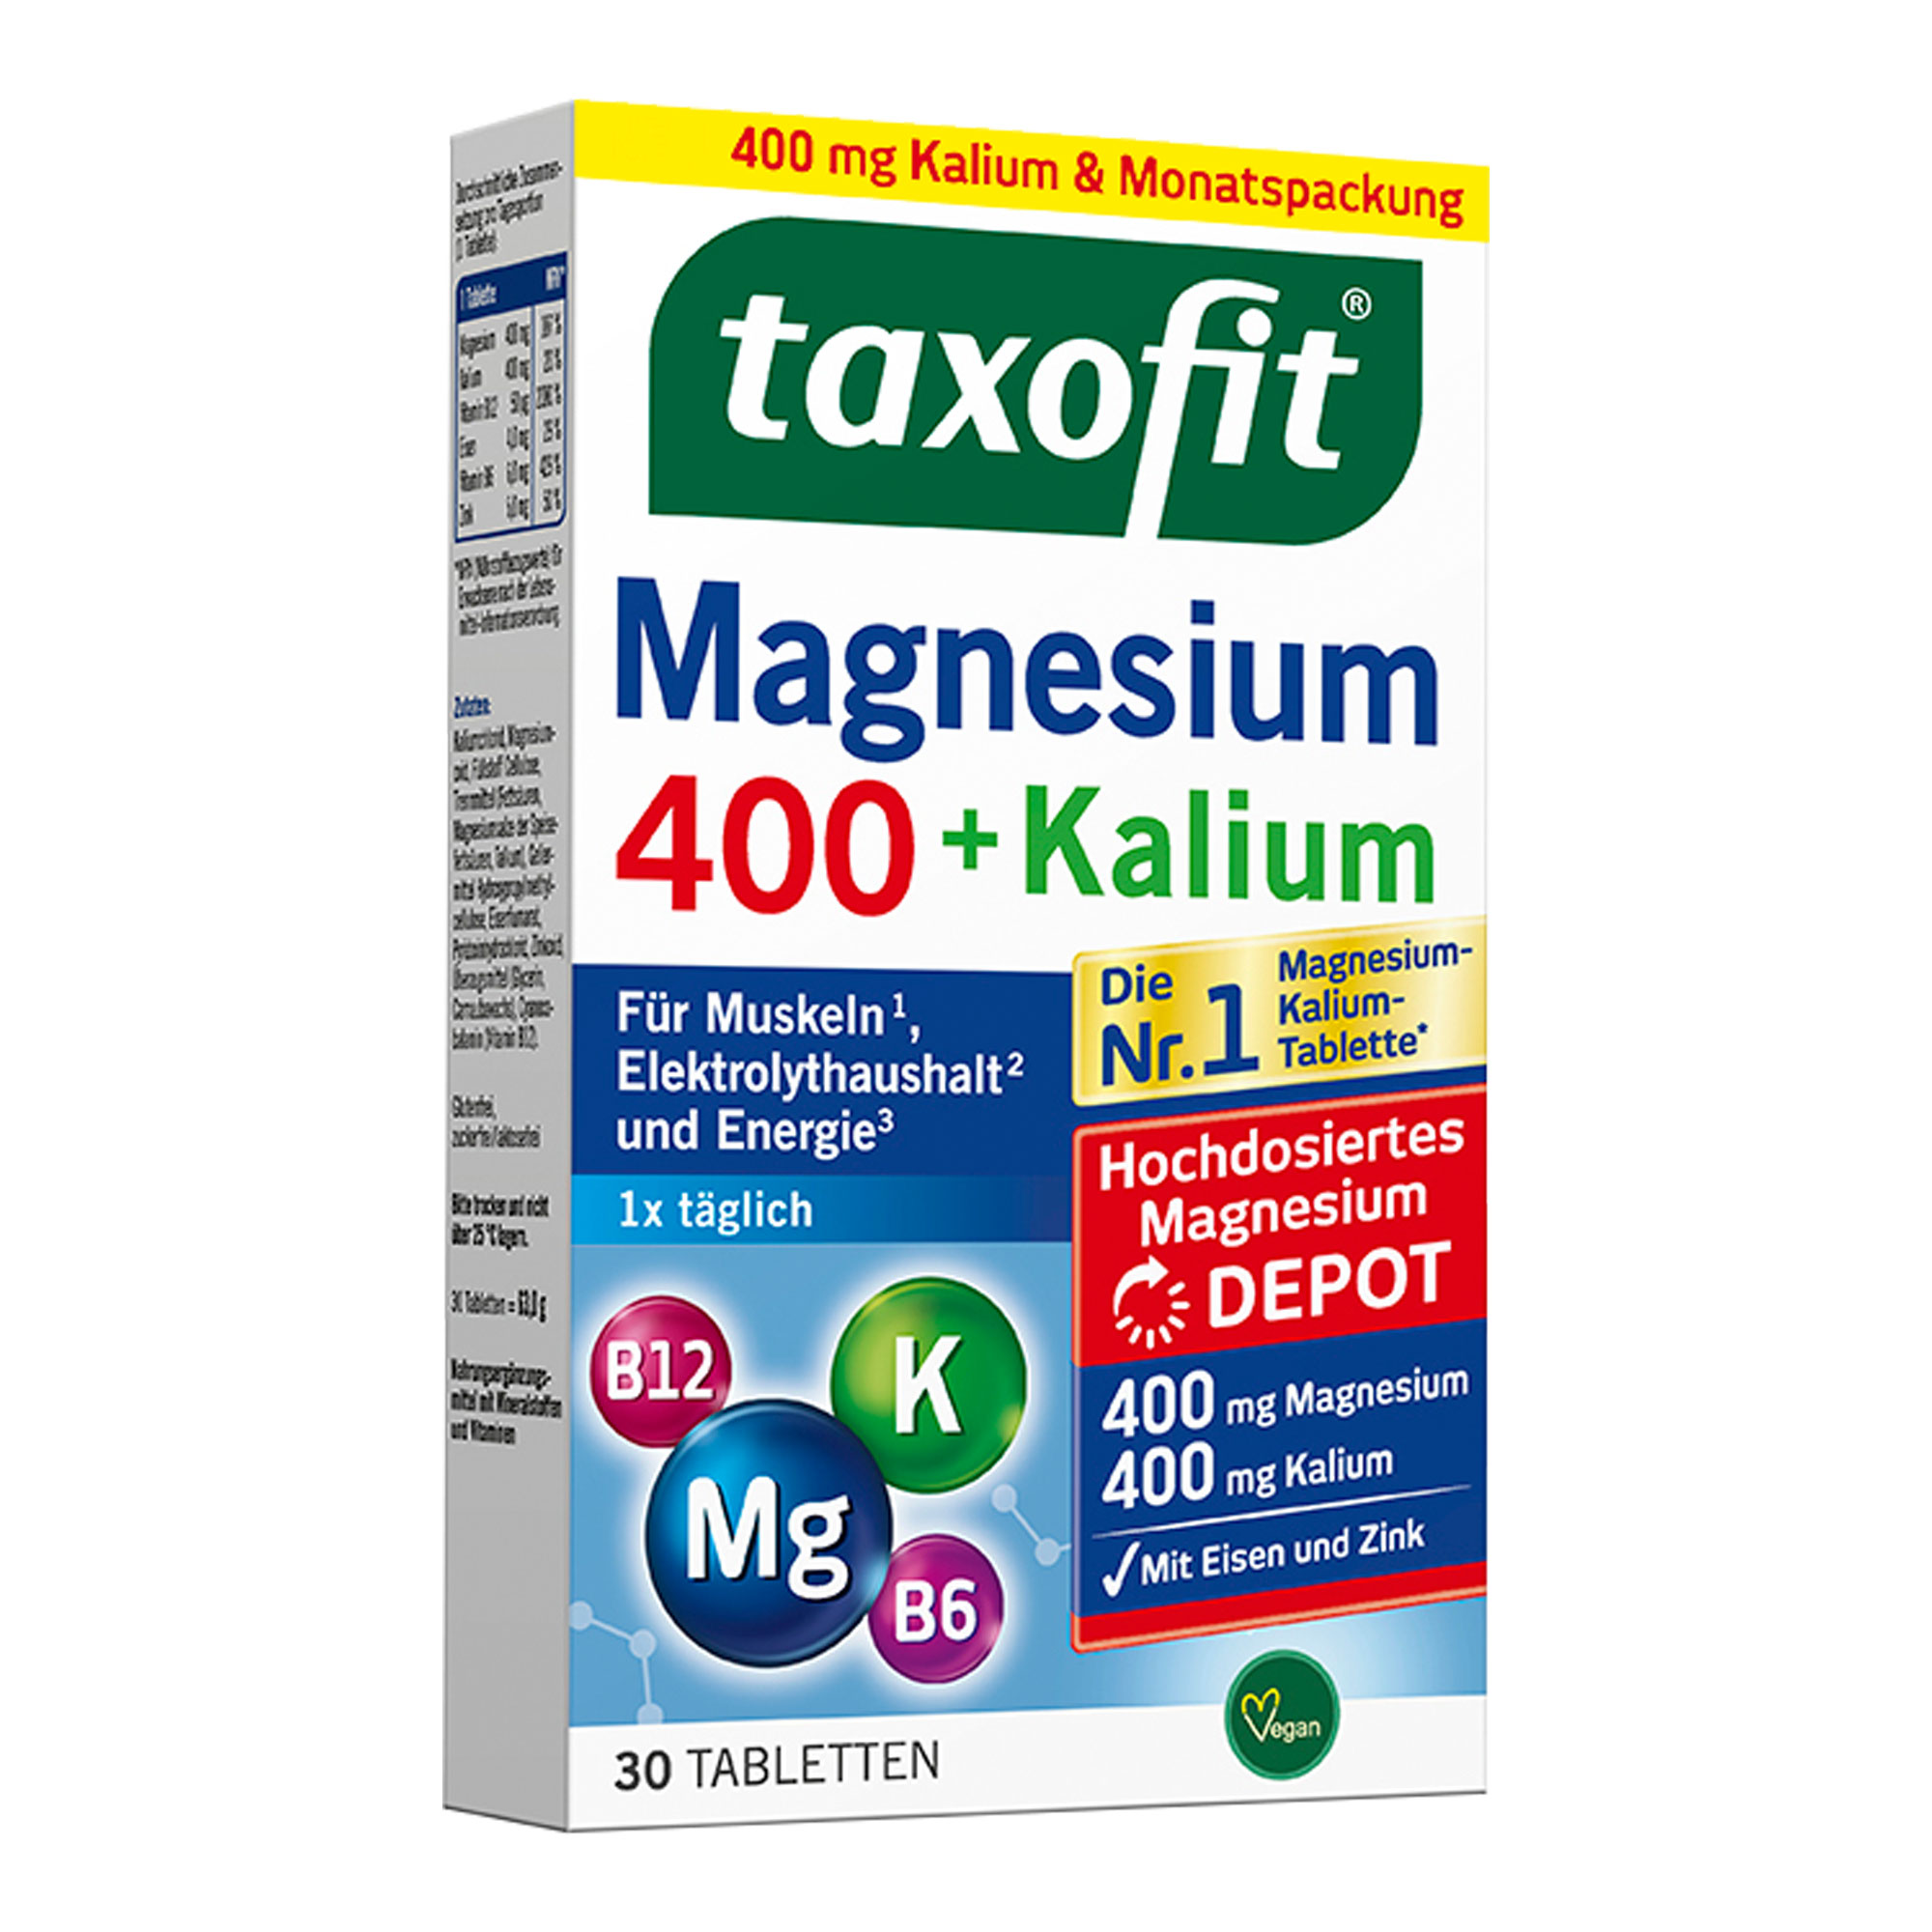 Nahrungsergänzungsmittel mit Magnesium und Kalium. Vegan.